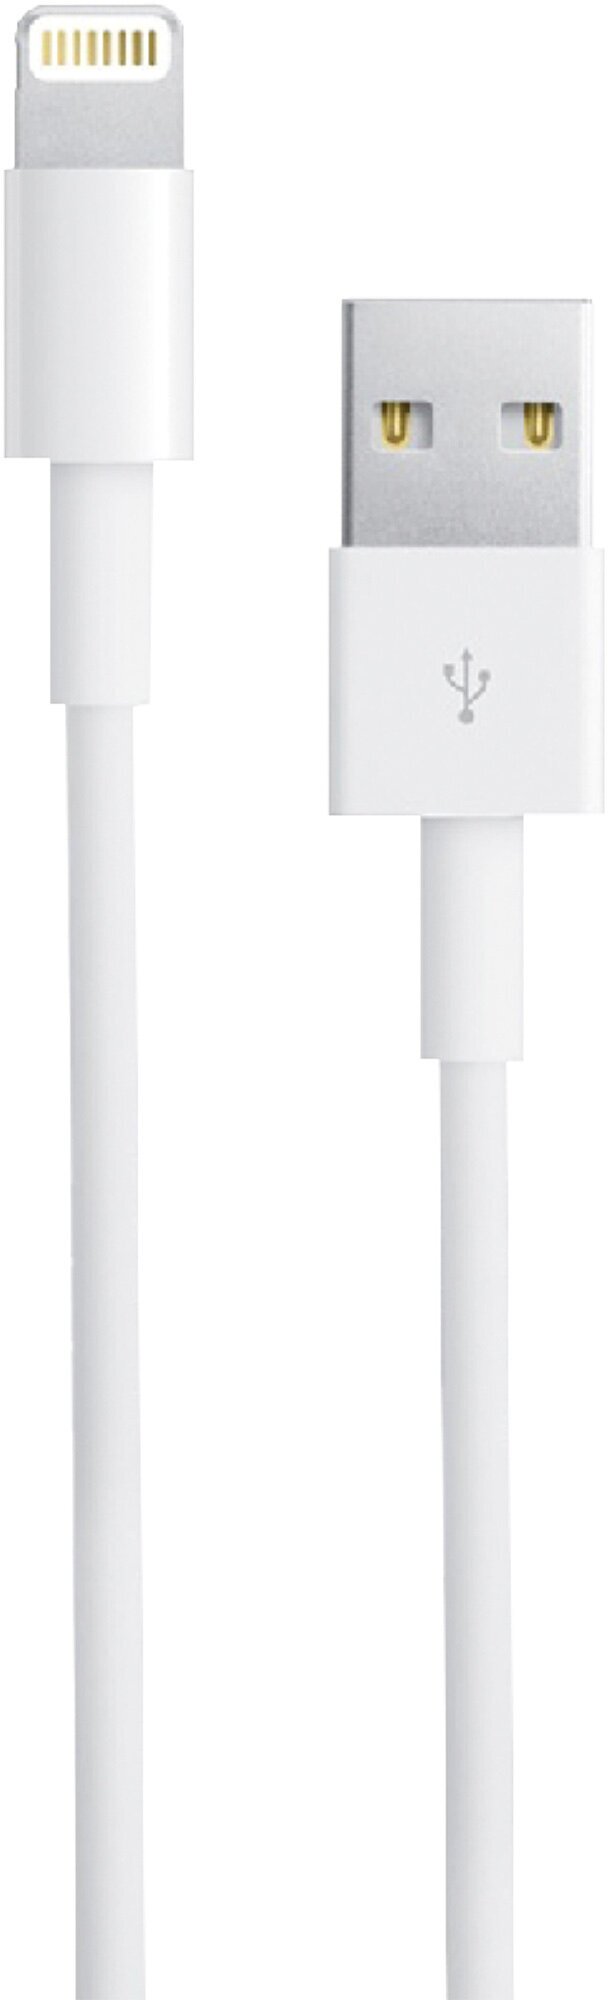 Кабель для зарядки USB Lightning Совместим с iPhone/ Зарядка для айфона/ iPad Pods iPod/ Лайтинг юсб